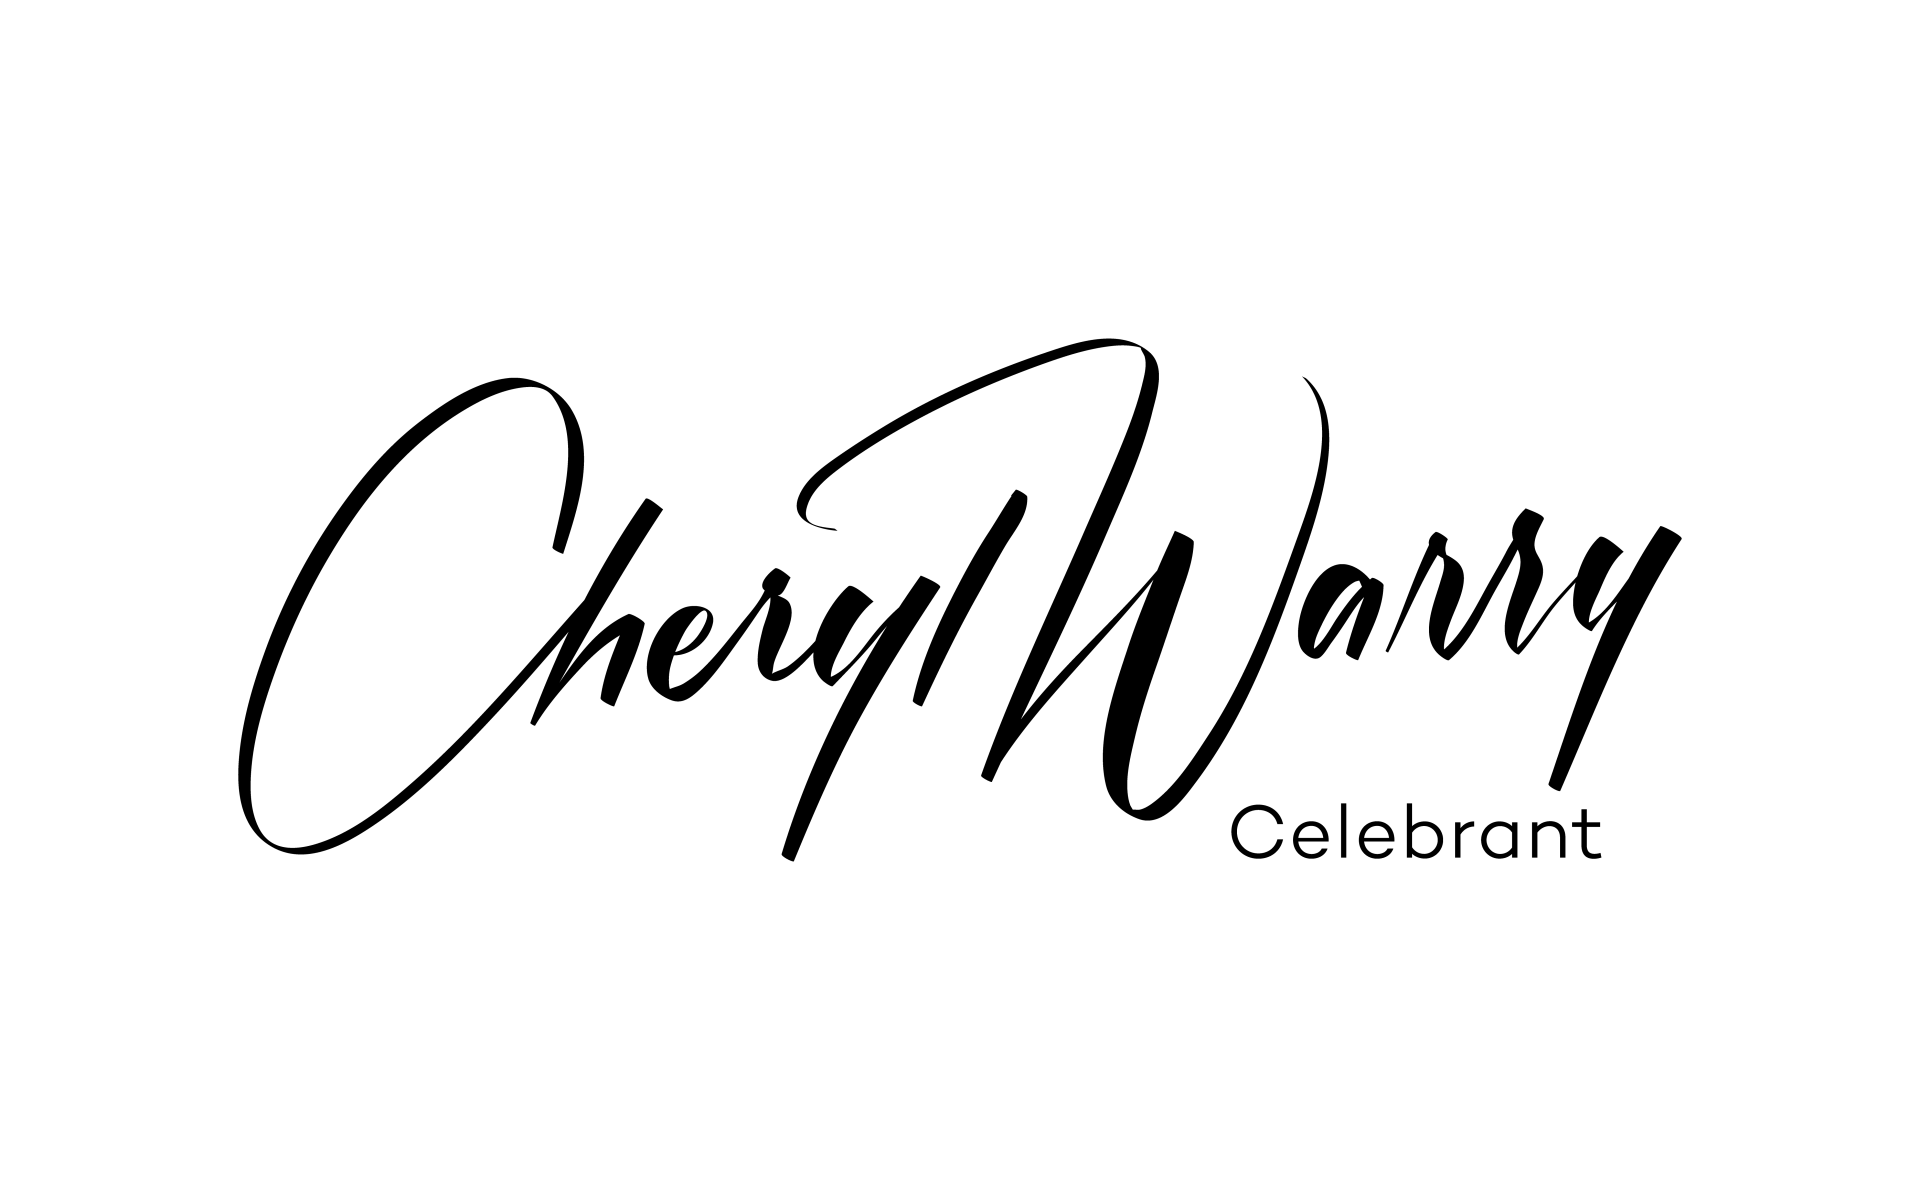 Cherly Warry Celebrant logo